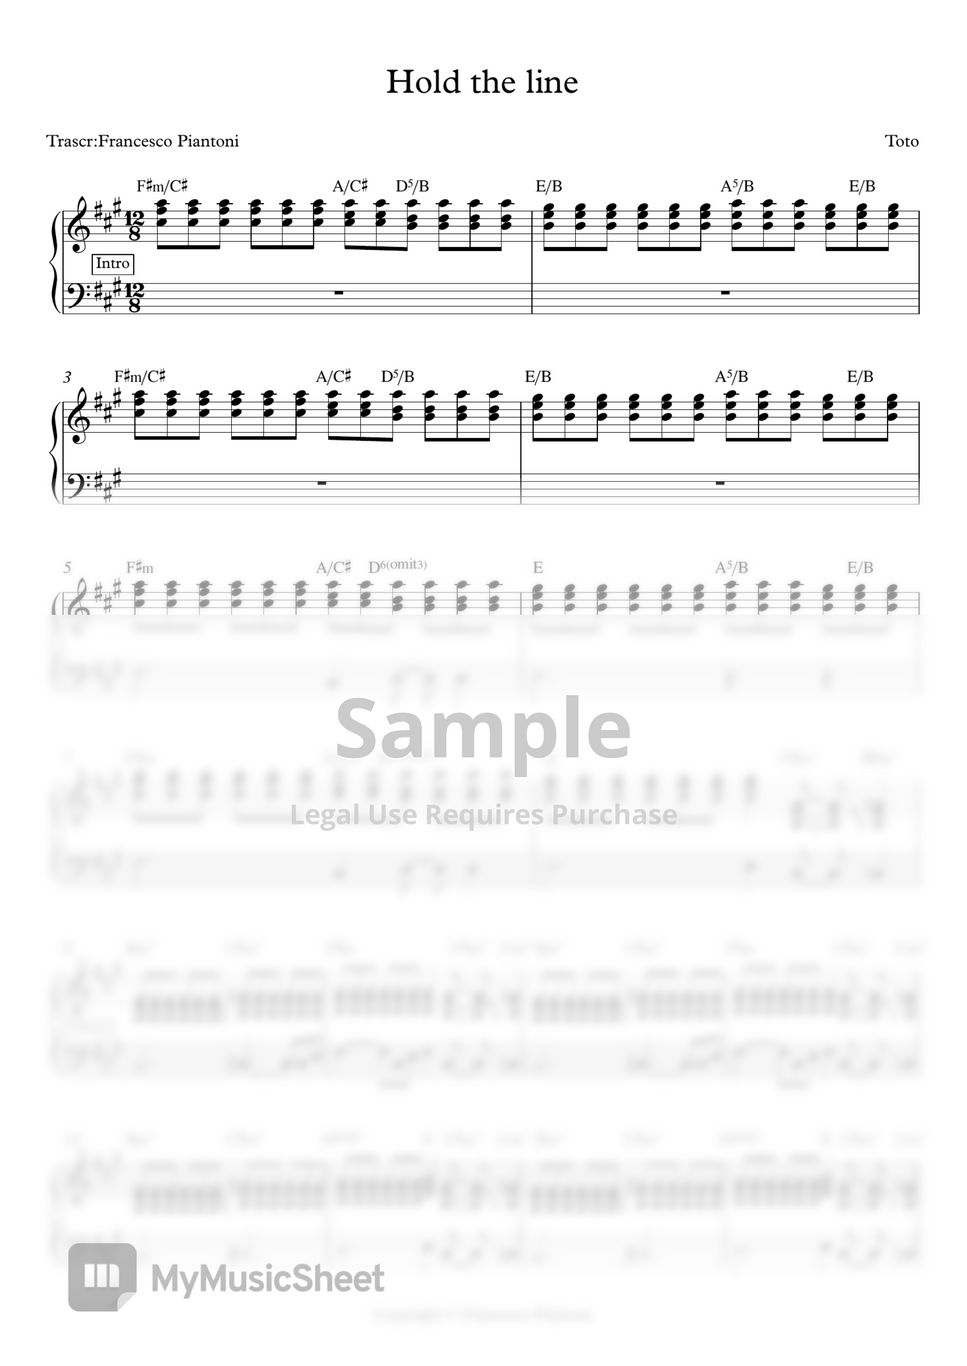 Toto - Hold the line (spartito pianoforte) by Francesco Piantoni